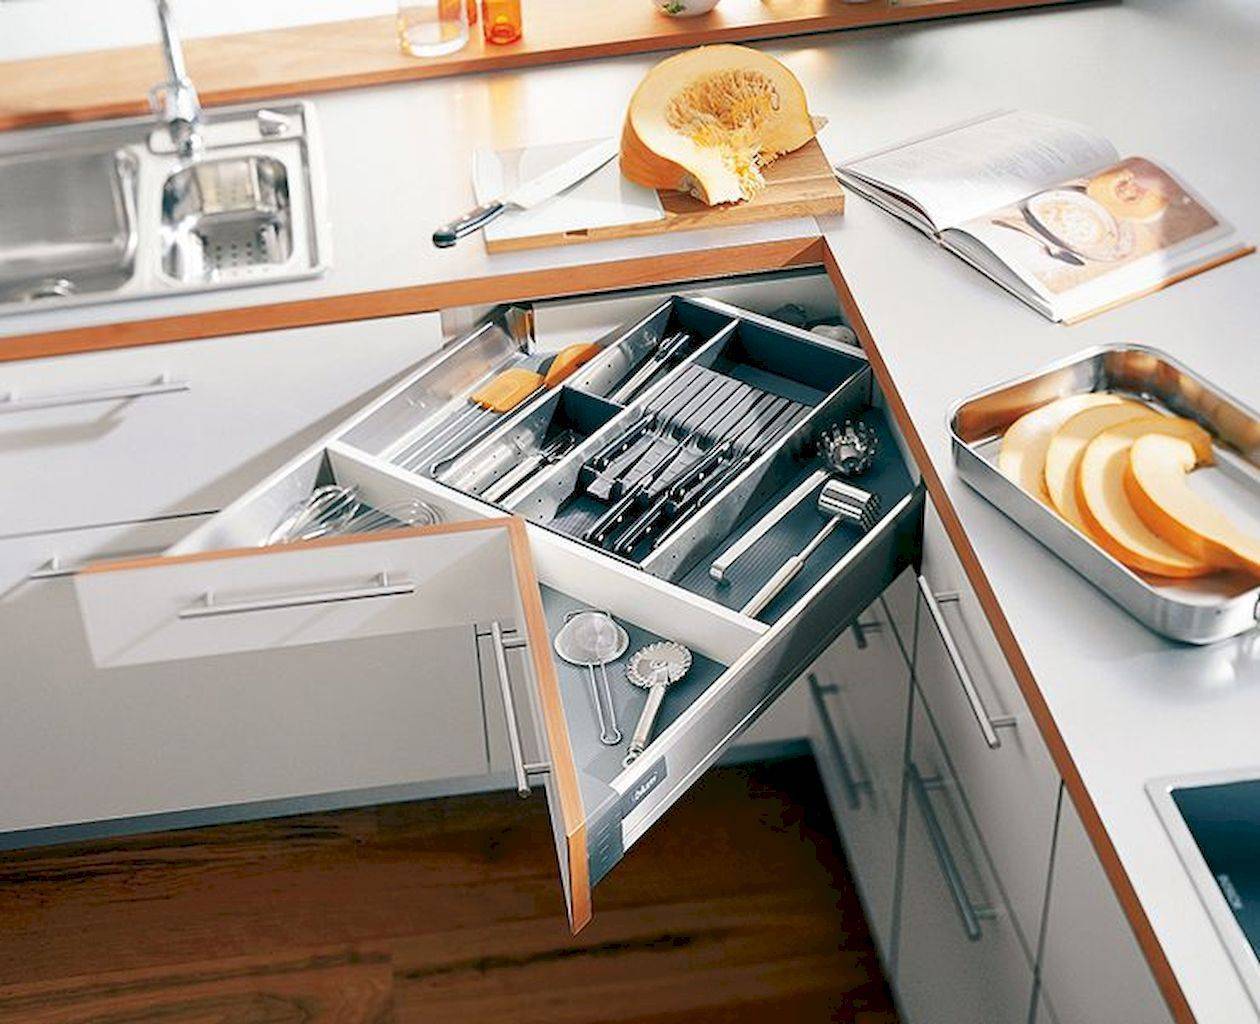 Как использовать угол в кухонном гарнитуре?